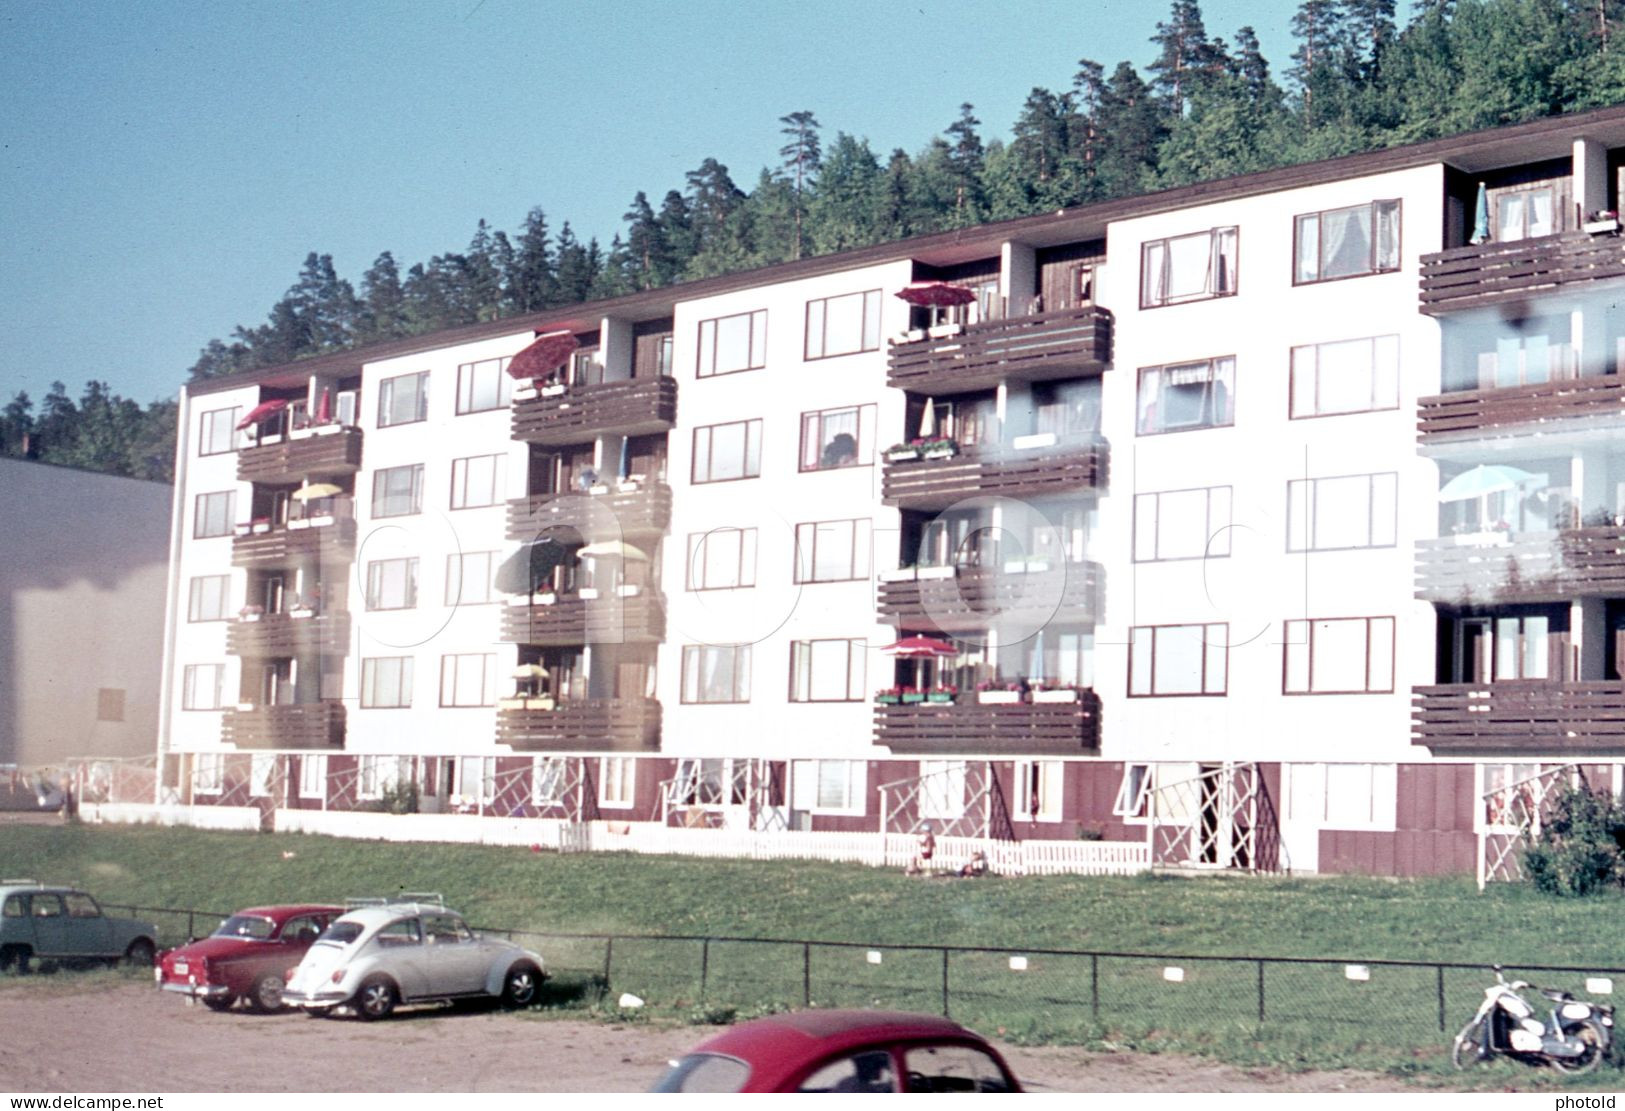 12 SLIDES SET 1977 OSLO NORWAY NORGE AMATEUR 35mm SLIDE PHOTO 35mm DIAPOSITIVE SLIDE Not PHOTO No FOTO NB4105 - Diapositivas